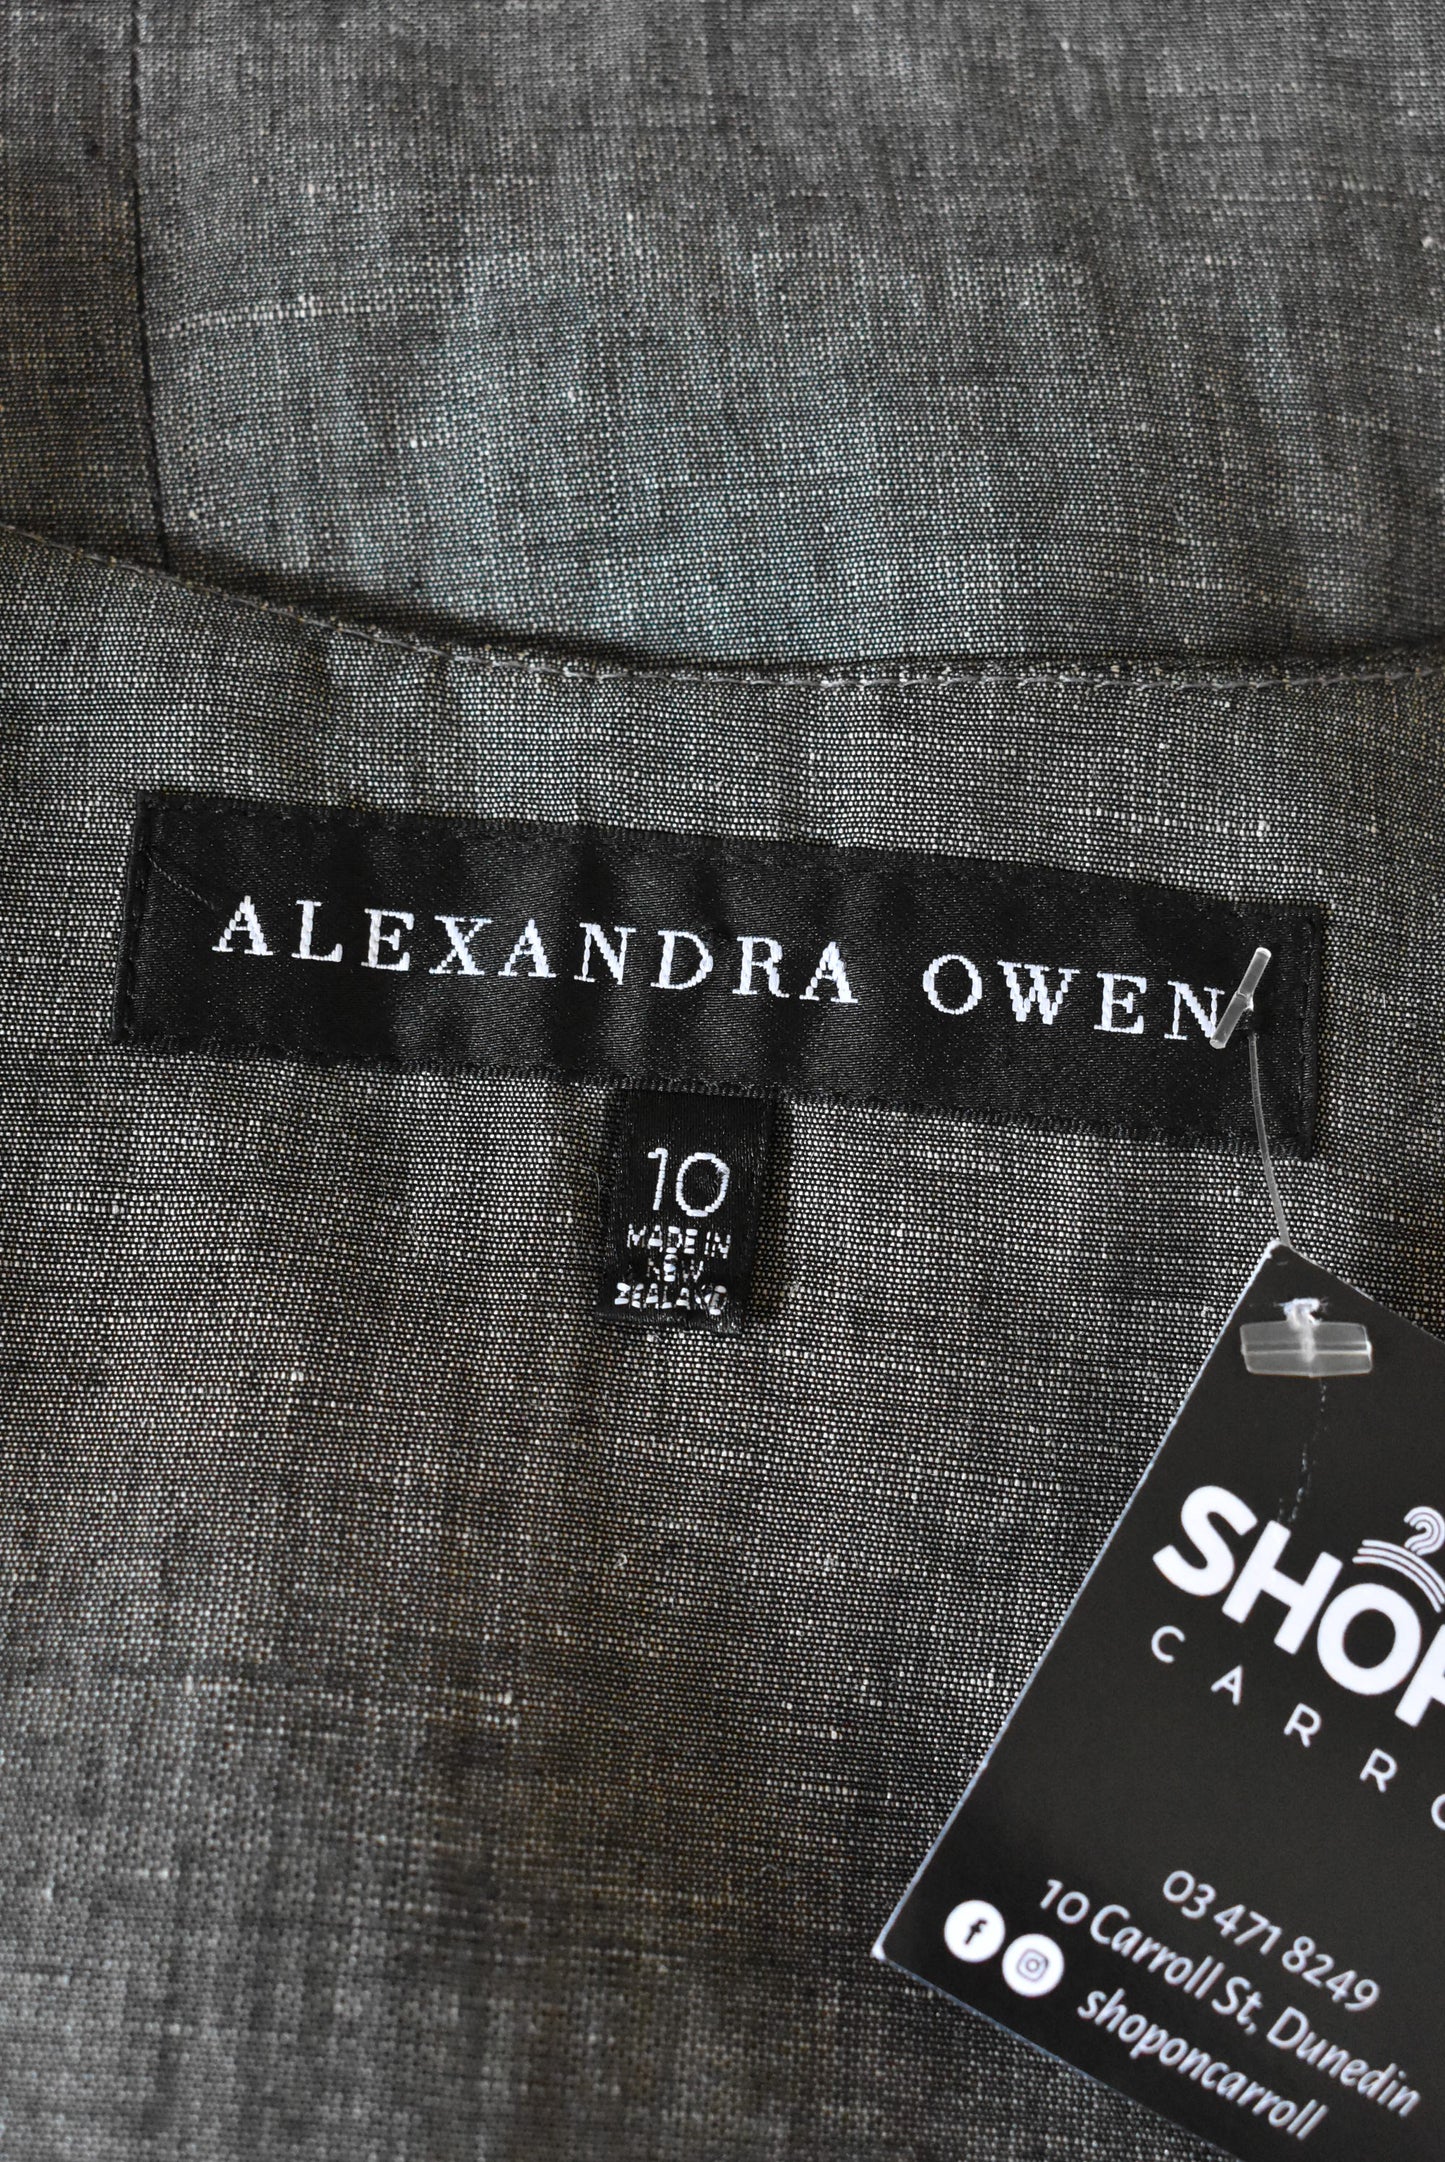 Alexandra Owen linen blend dinner vest, 10